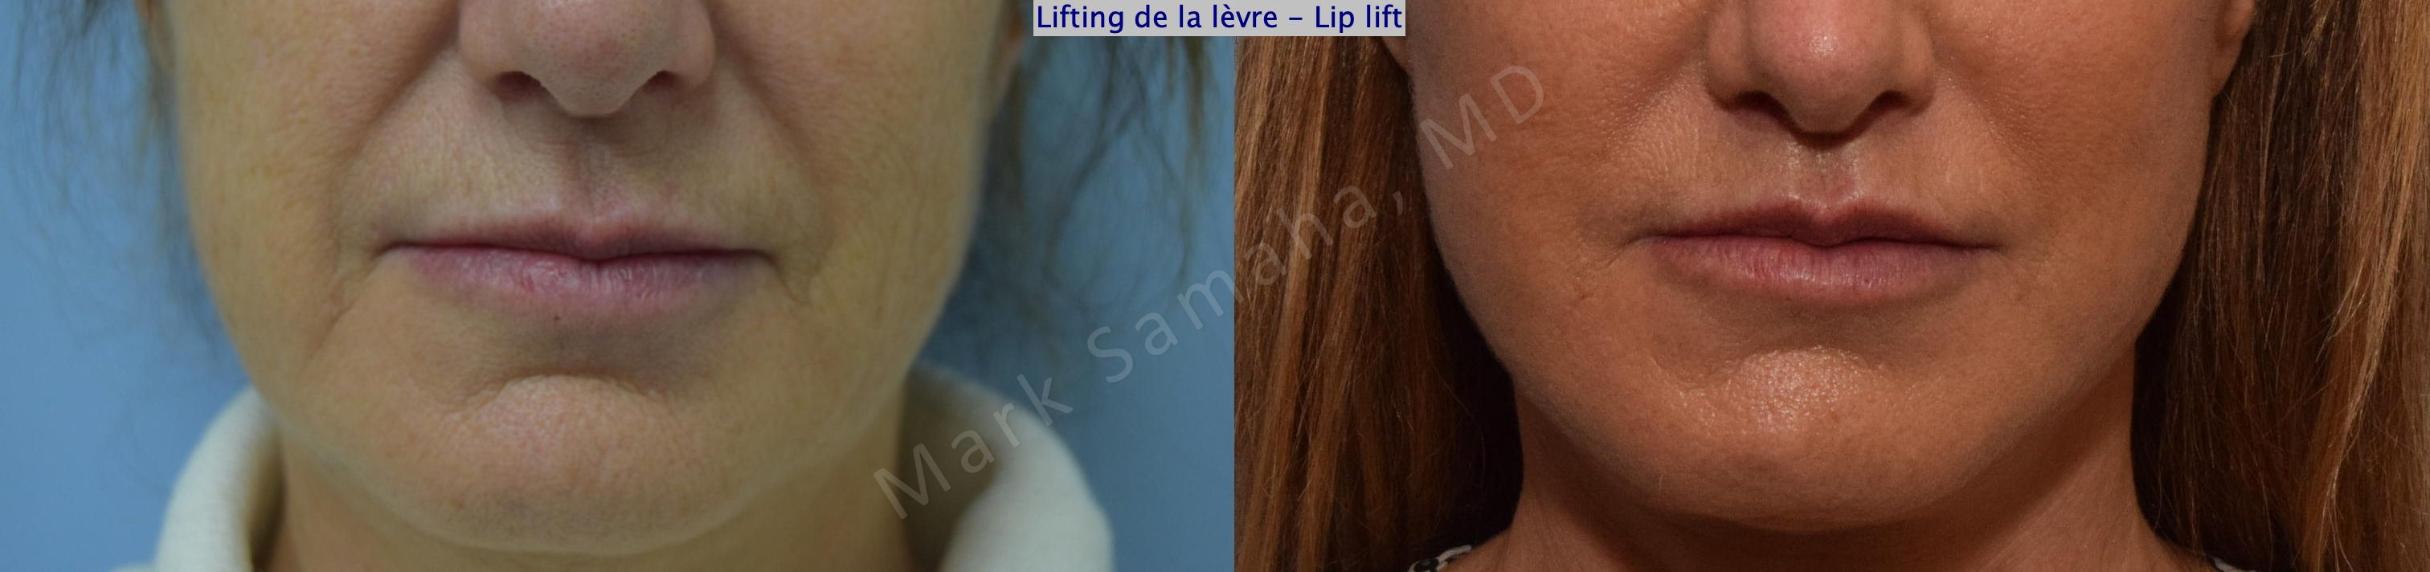 Before & After Lip Lift / Lifting de la lèvre supérieure Case 168 Front View in Mount Royal, QC